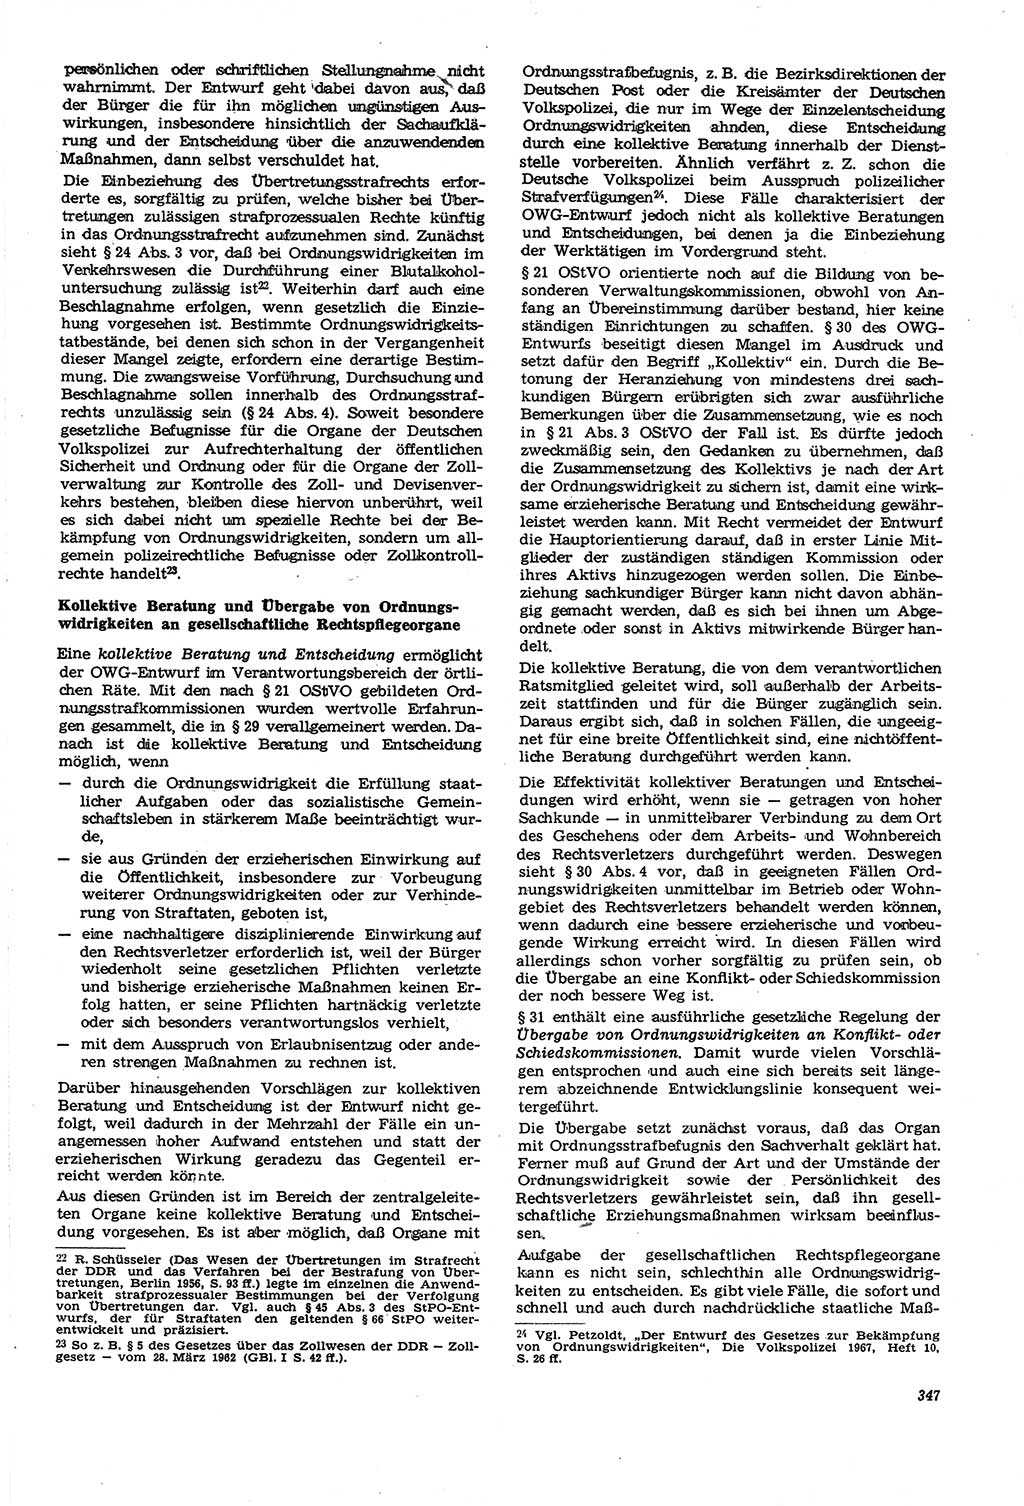 Neue Justiz (NJ), Zeitschrift für Recht und Rechtswissenschaft [Deutsche Demokratische Republik (DDR)], 21. Jahrgang 1967, Seite 347 (NJ DDR 1967, S. 347)